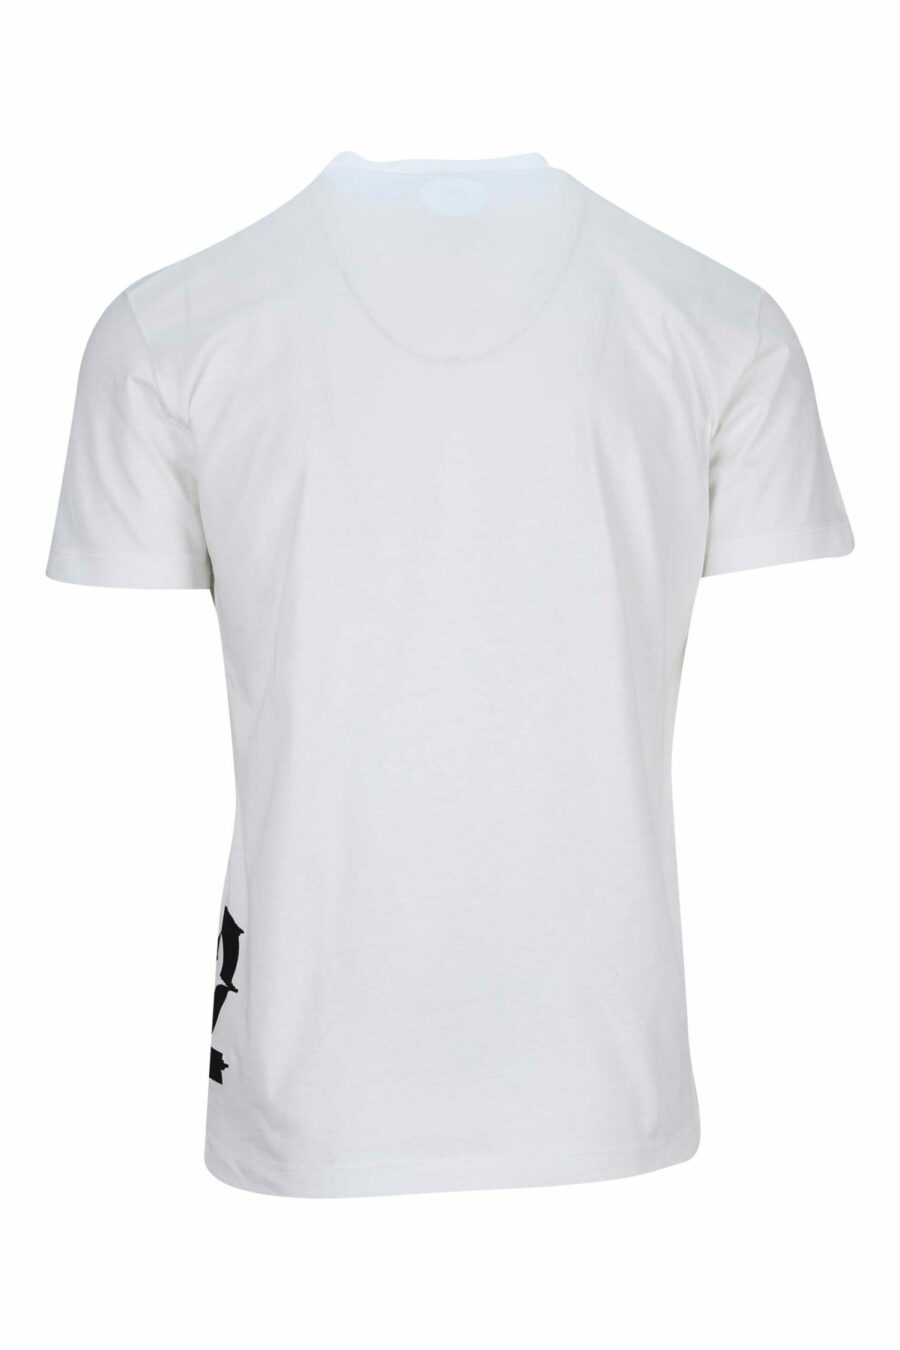 Camiseta blanca con maxilogo negro distorcionado bajo - 8054148332730 1 scaled